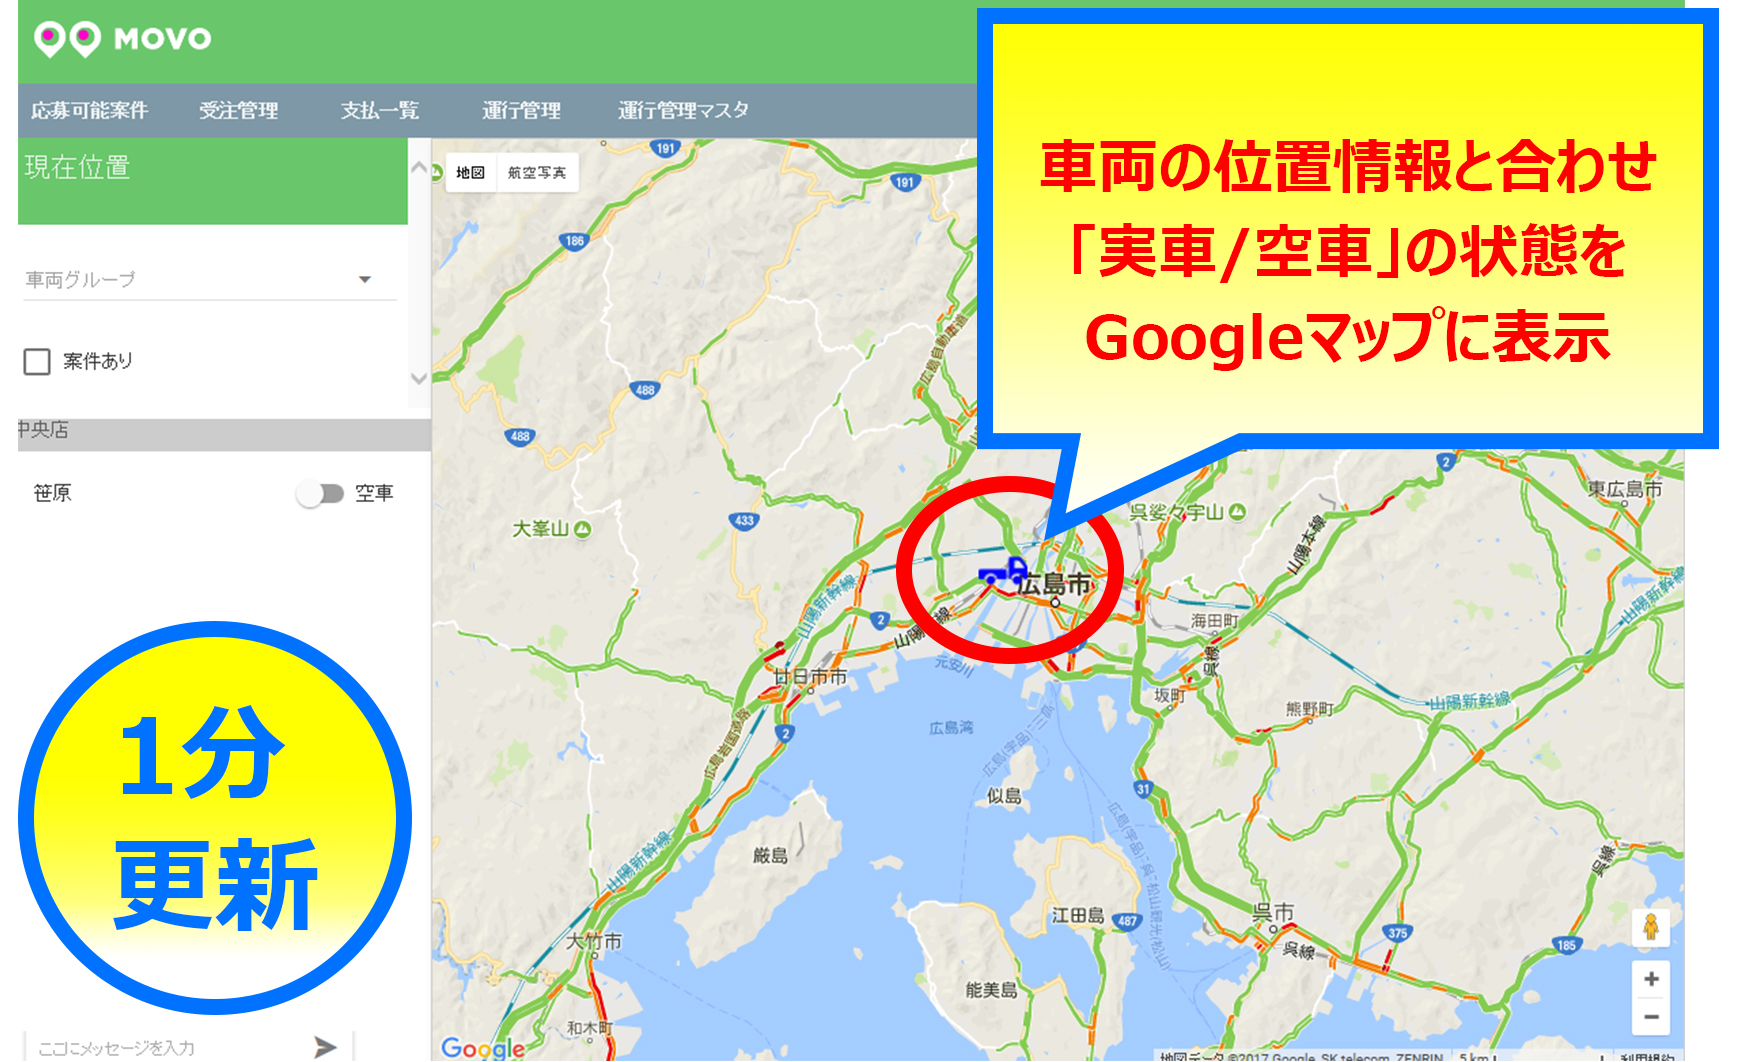 車両の位置情報と合わせ「実車/空車」の状態をGoogleマップに表示